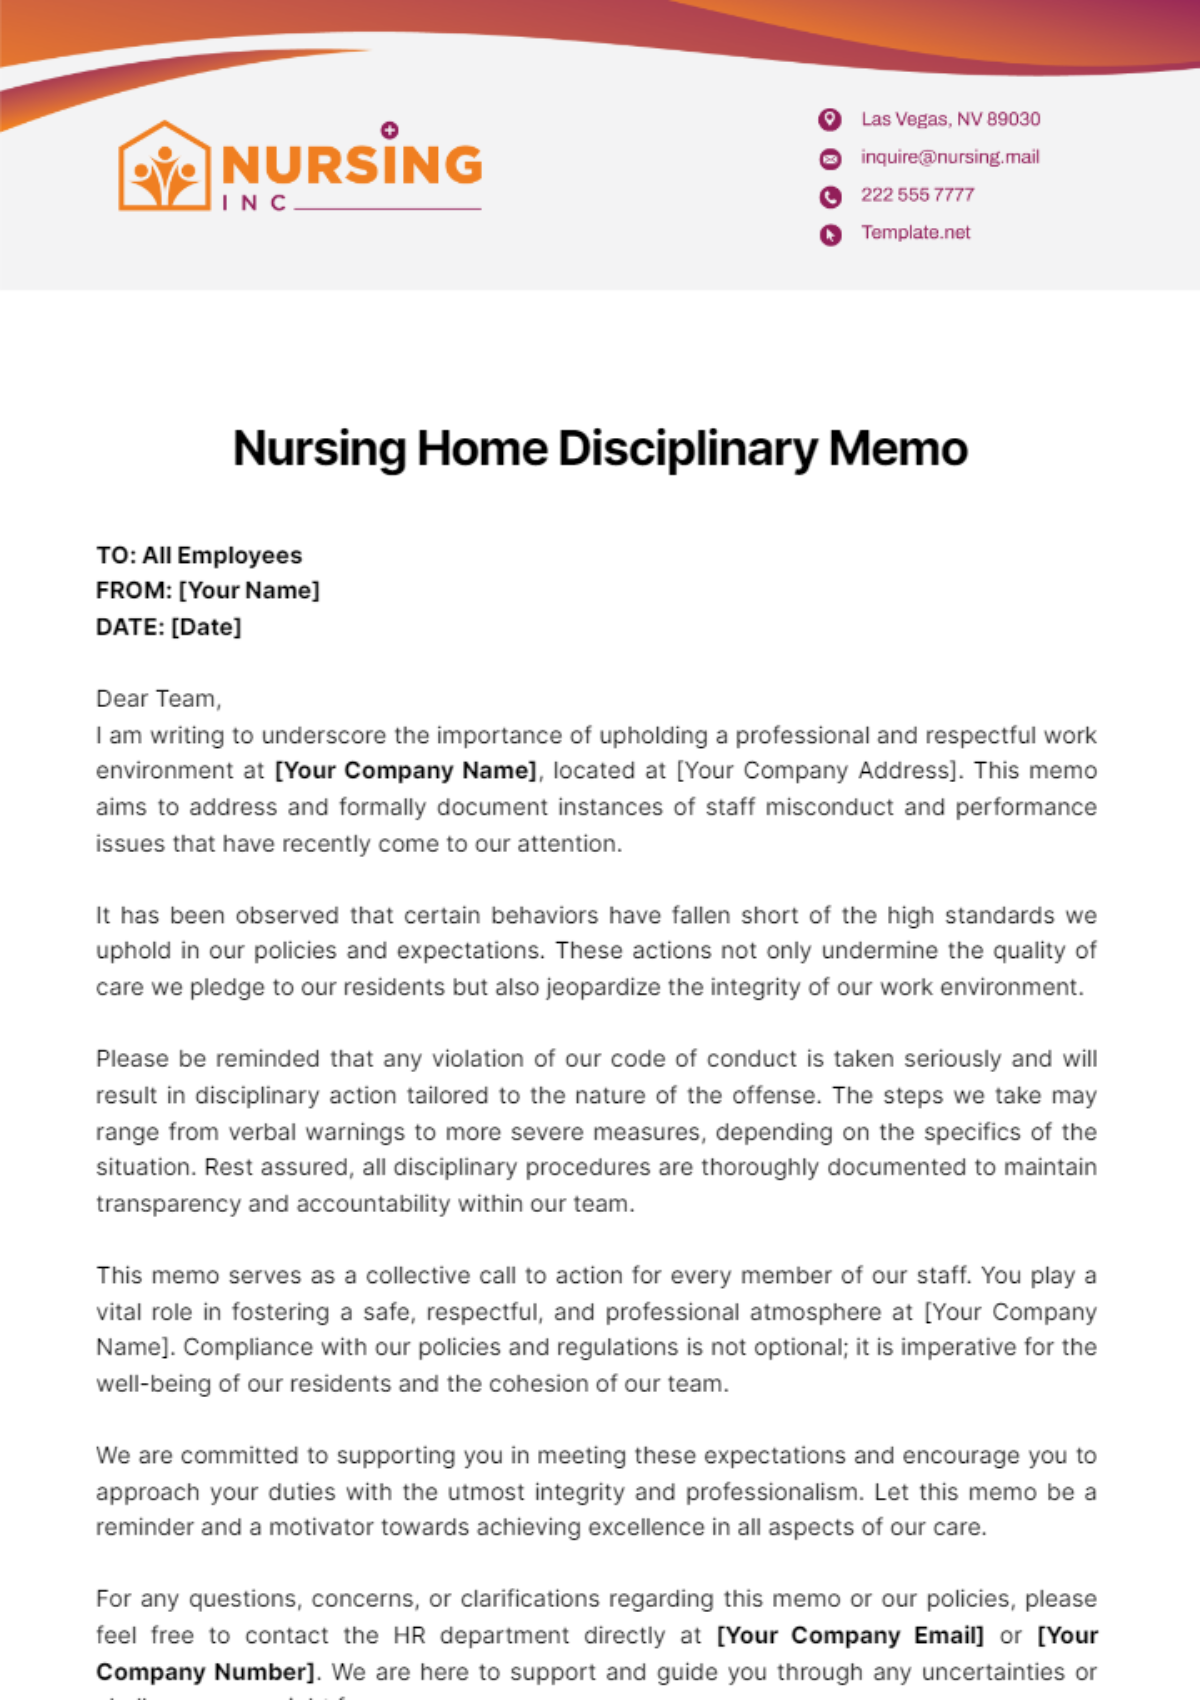 Nursing Home Disciplinary Memo Template